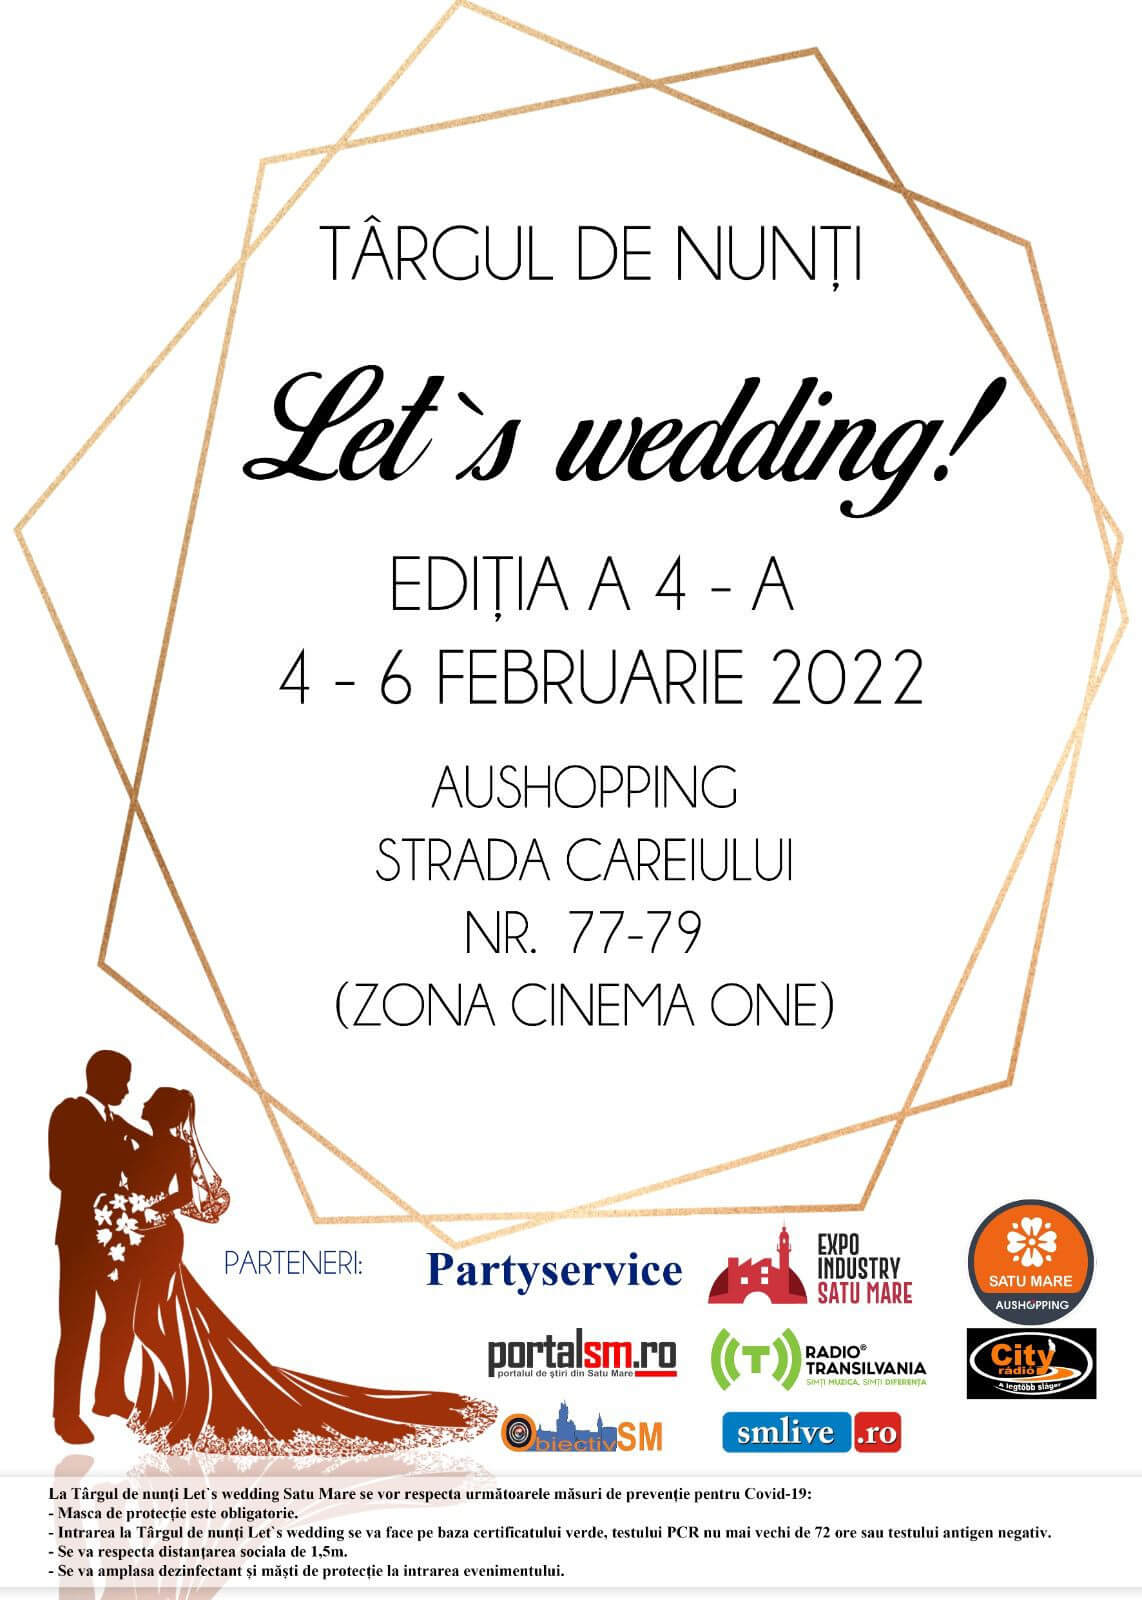 Între 4-6 februarie ne vedem la Târgul de Nunți Let's wedding!